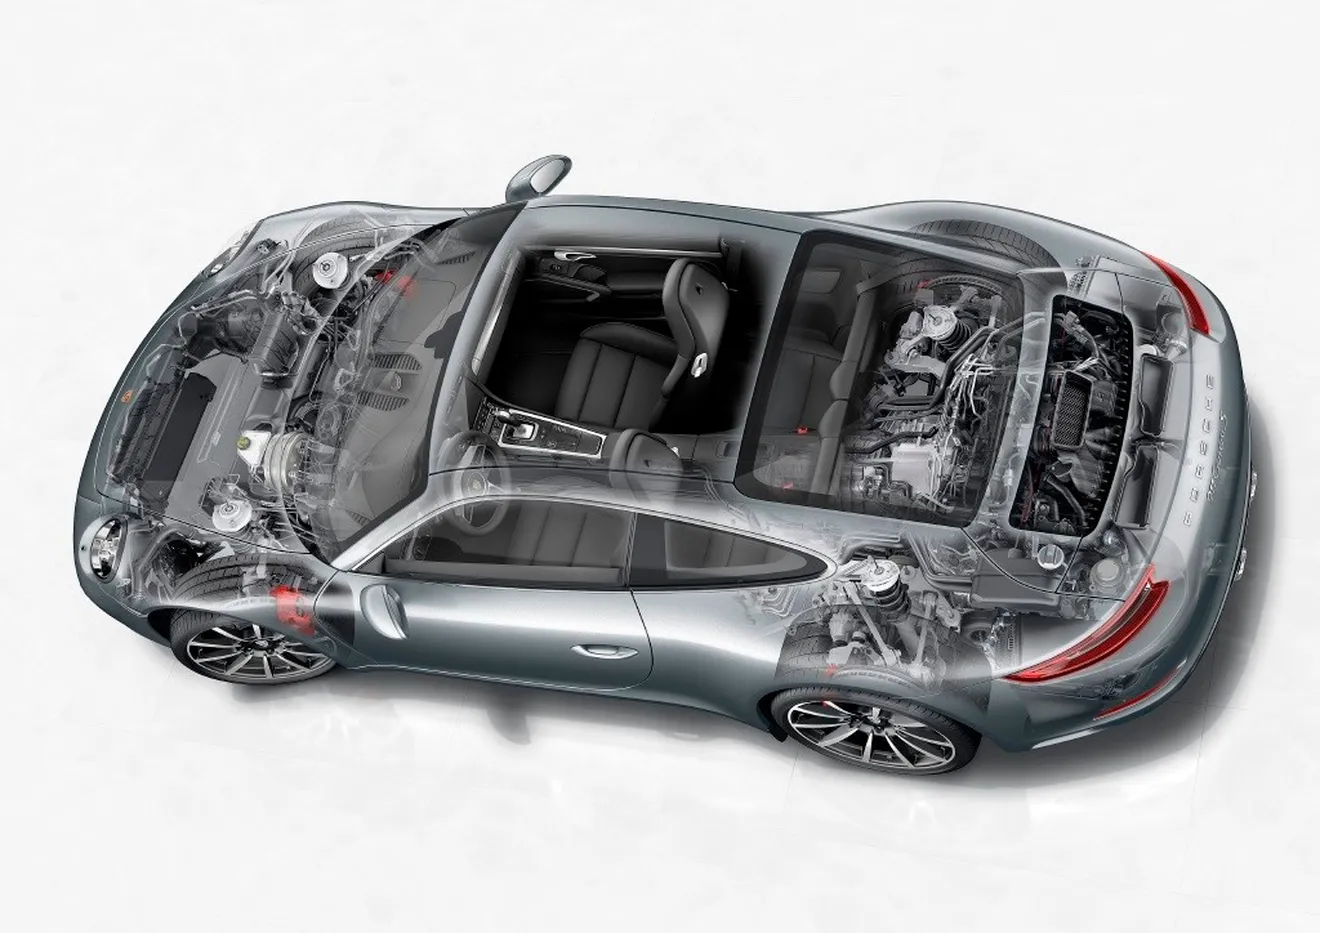 Porsche 911 híbrido enchufable, en desarrollo: no llegará antes del 2020